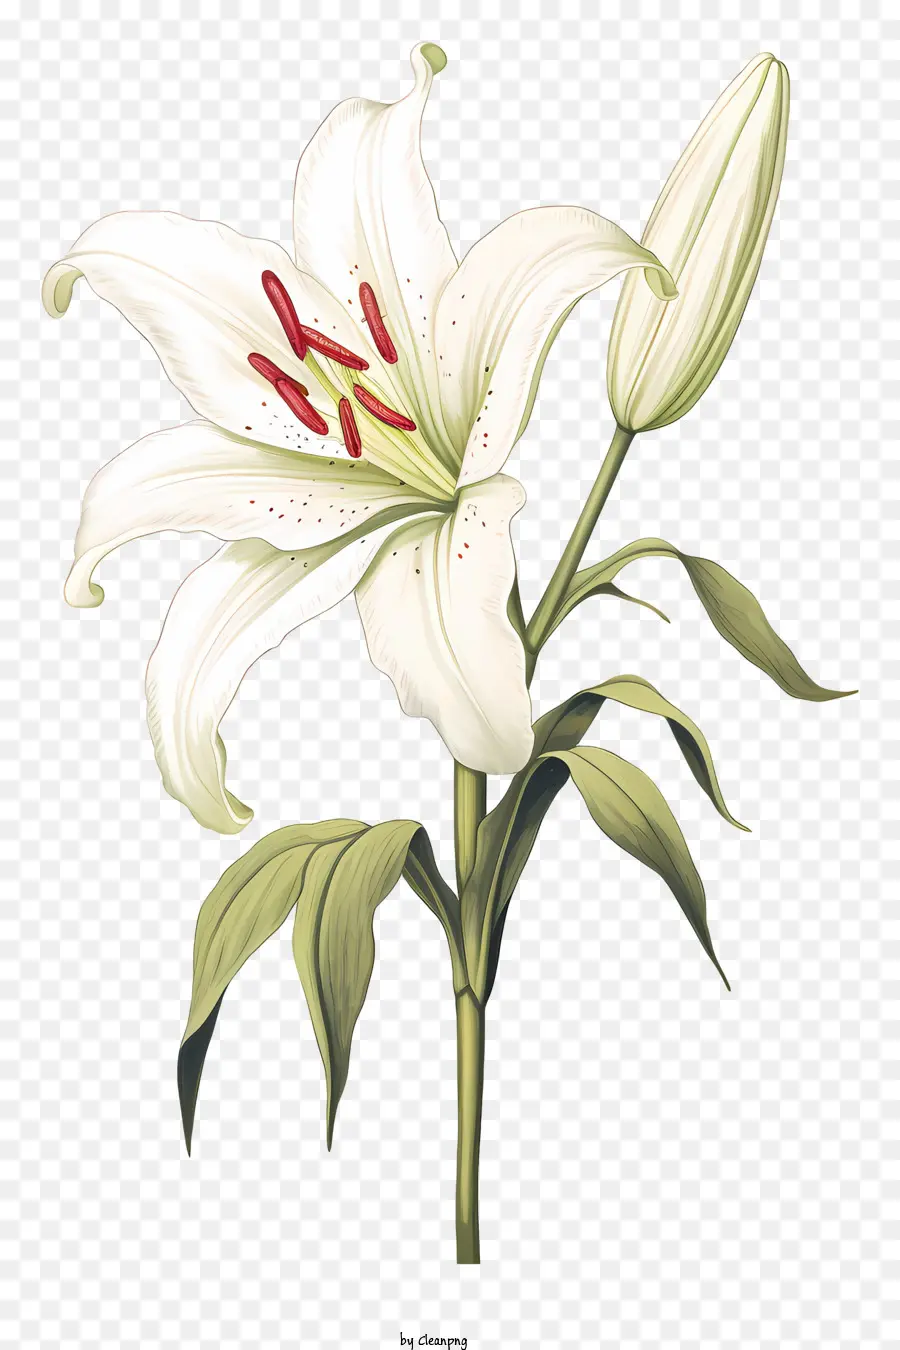 weiße Lilie Blume - Weiße Lilie mit geschlossenen Blütenblättern und weißem Zentrum